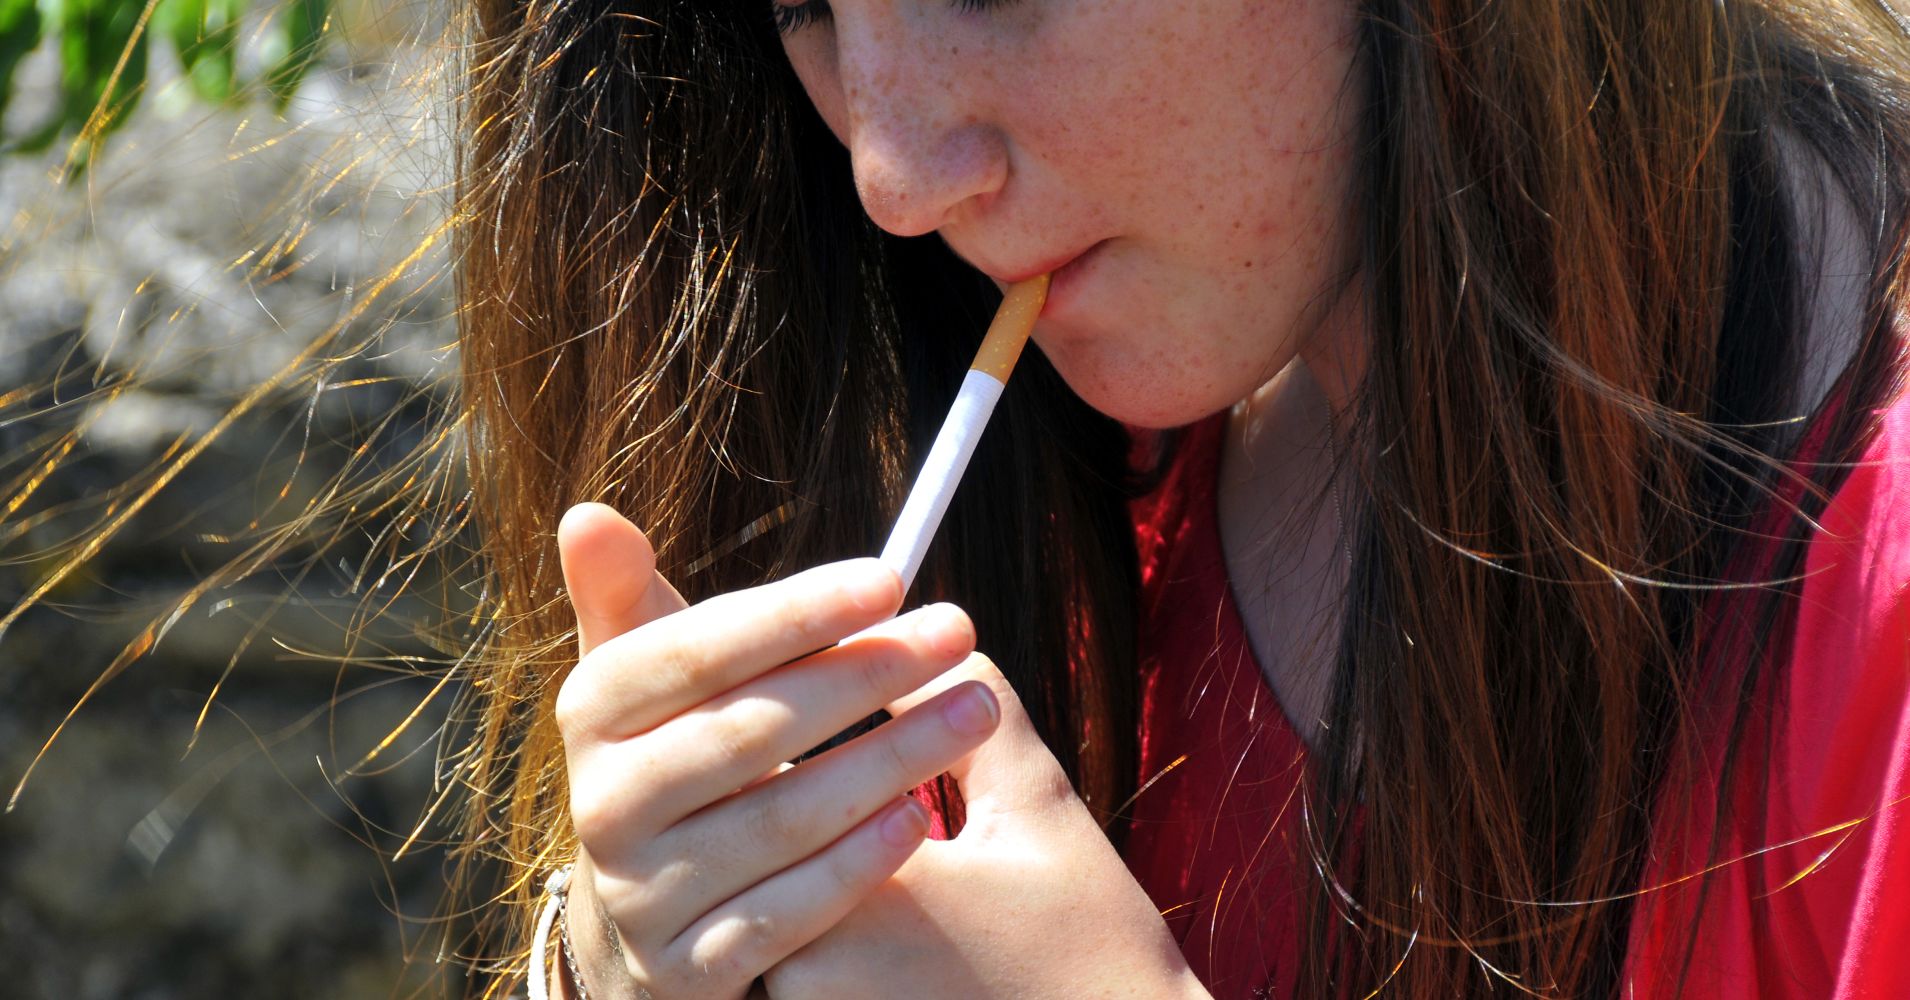 Adolescent Smoking